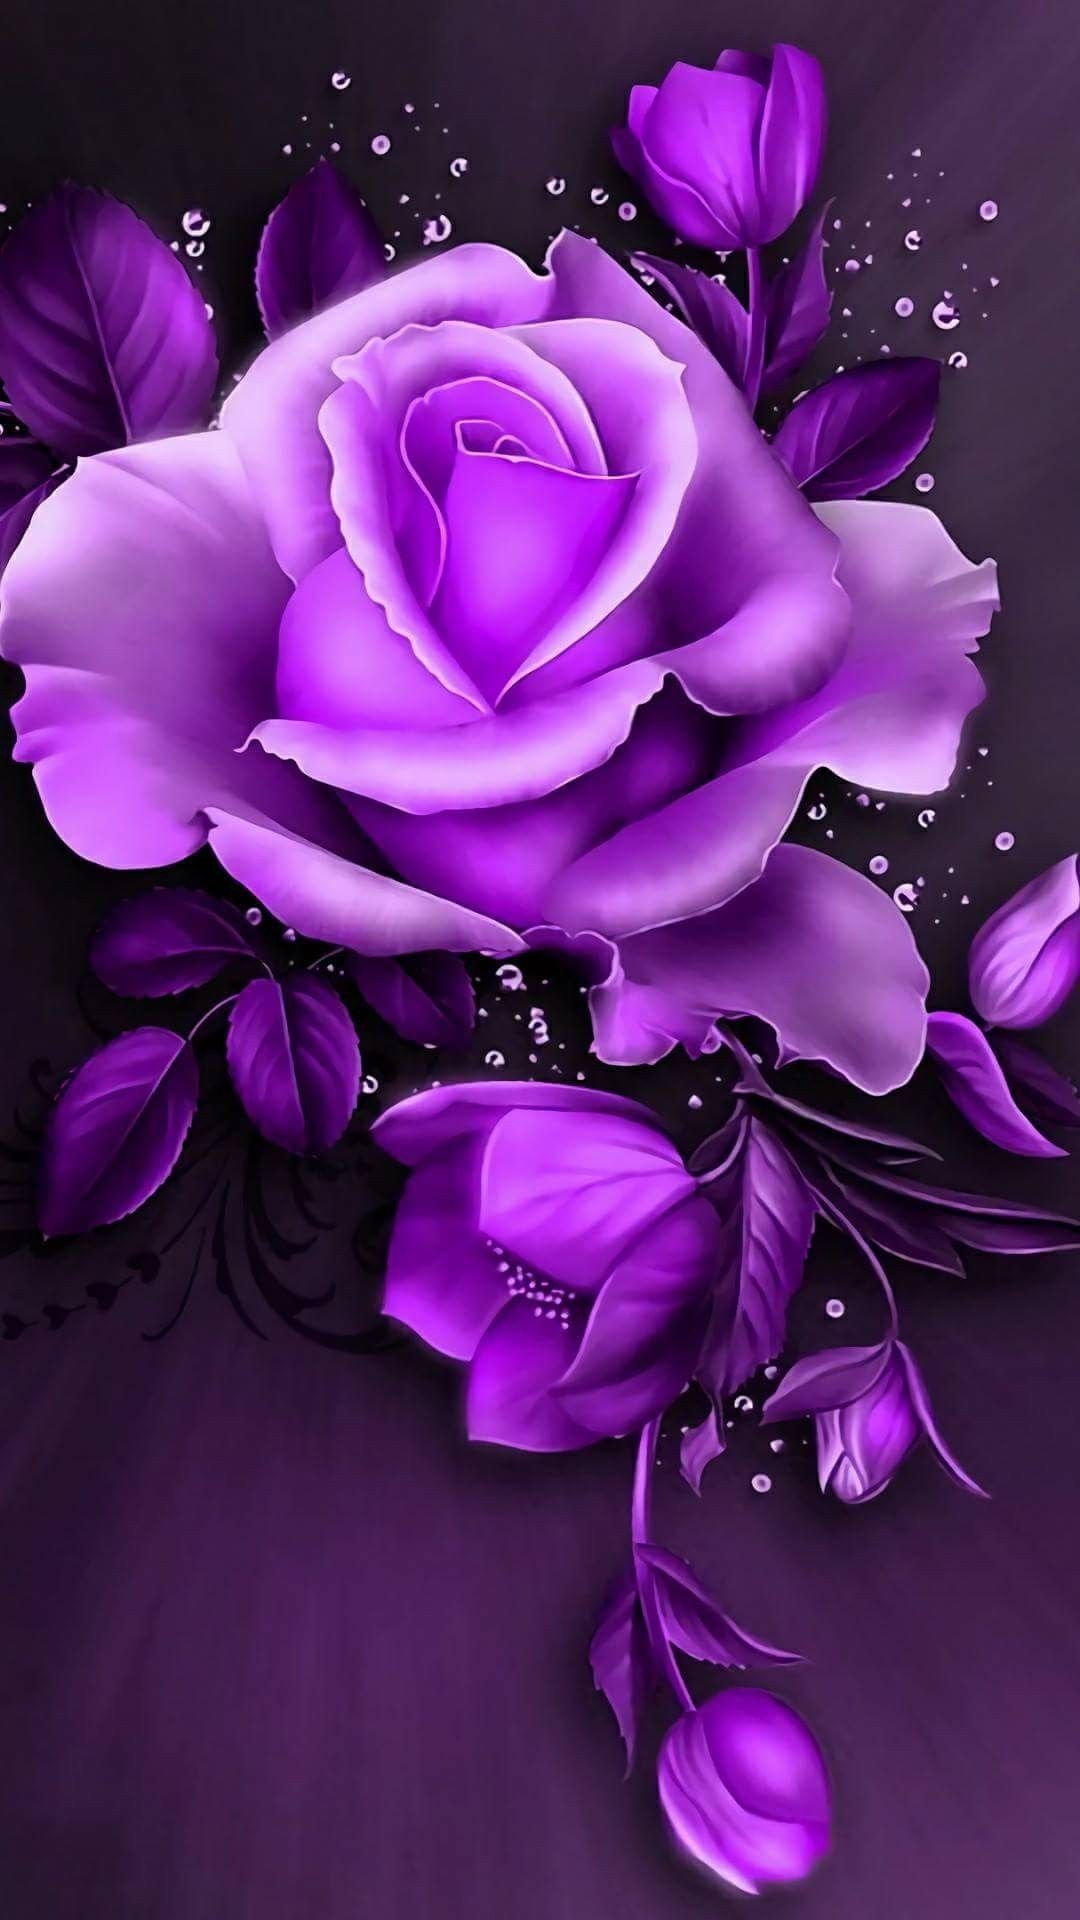 Hình nền hoa hồng đen và tím tạo nên một bầu không khí tối giản và sang trọng. Hãy thưởng thức bức ảnh này để cảm nhận được sự độc đáo của hoa hồng và màu tím nổi bật.